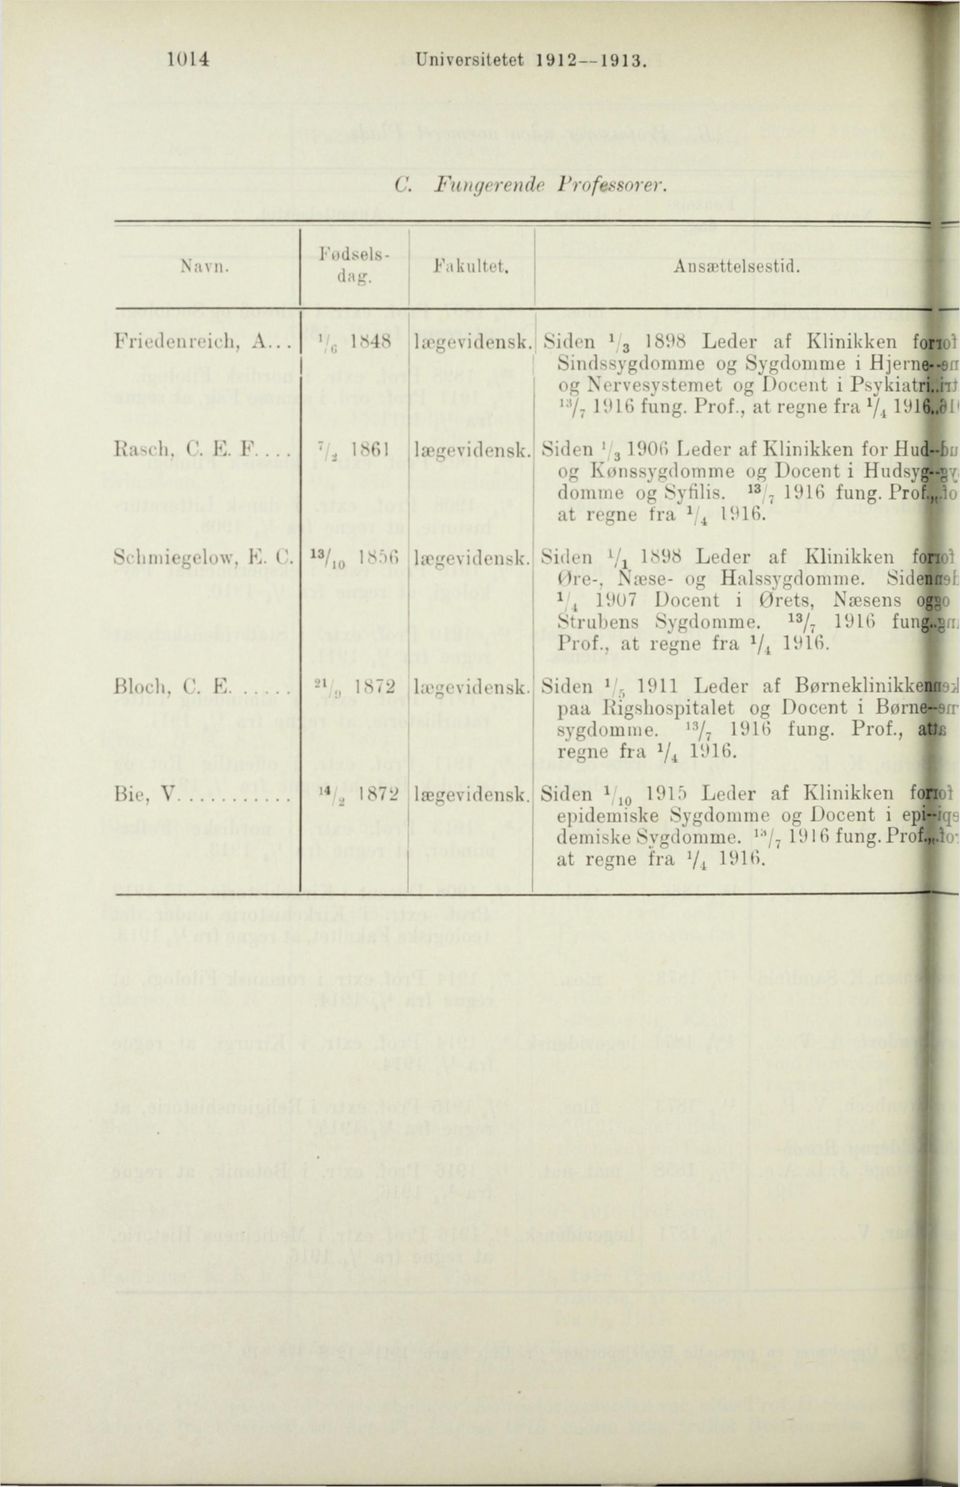 Siden l j 3 1906 lieder af Klinikken for Hud-Bo og Kønssygdomme og Docent i HudsyAv domme og Syfilis. 18 / 7 1916 fung. Prof.,,.lo at regne fra x / 4 1916. Schniiegelow, K. C.